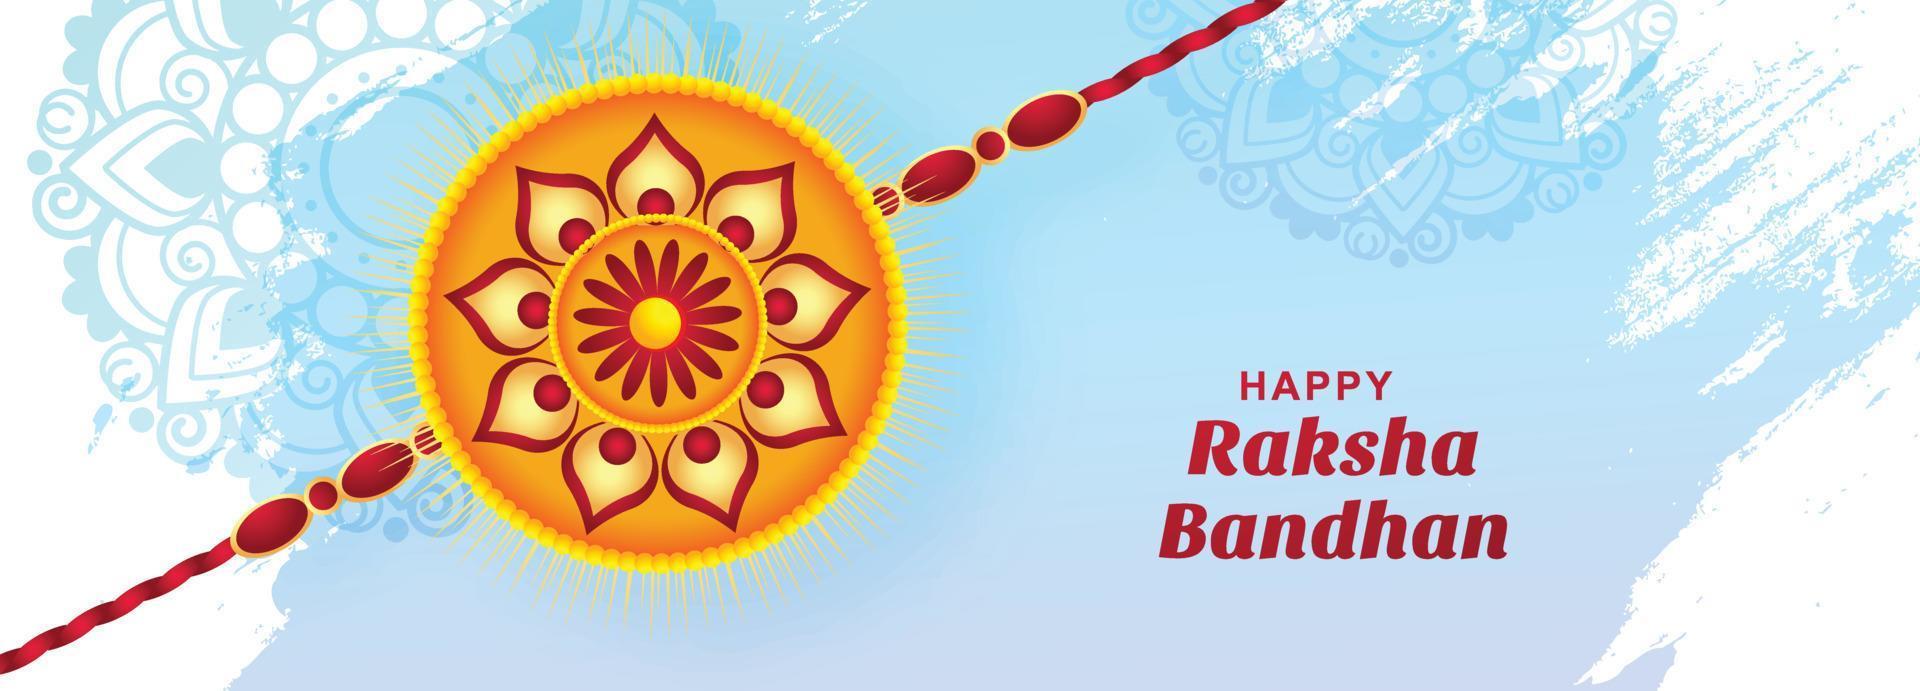 hinduistisches Festival Raksha Bandhan Grußkarte Banner Hintergrund vektor